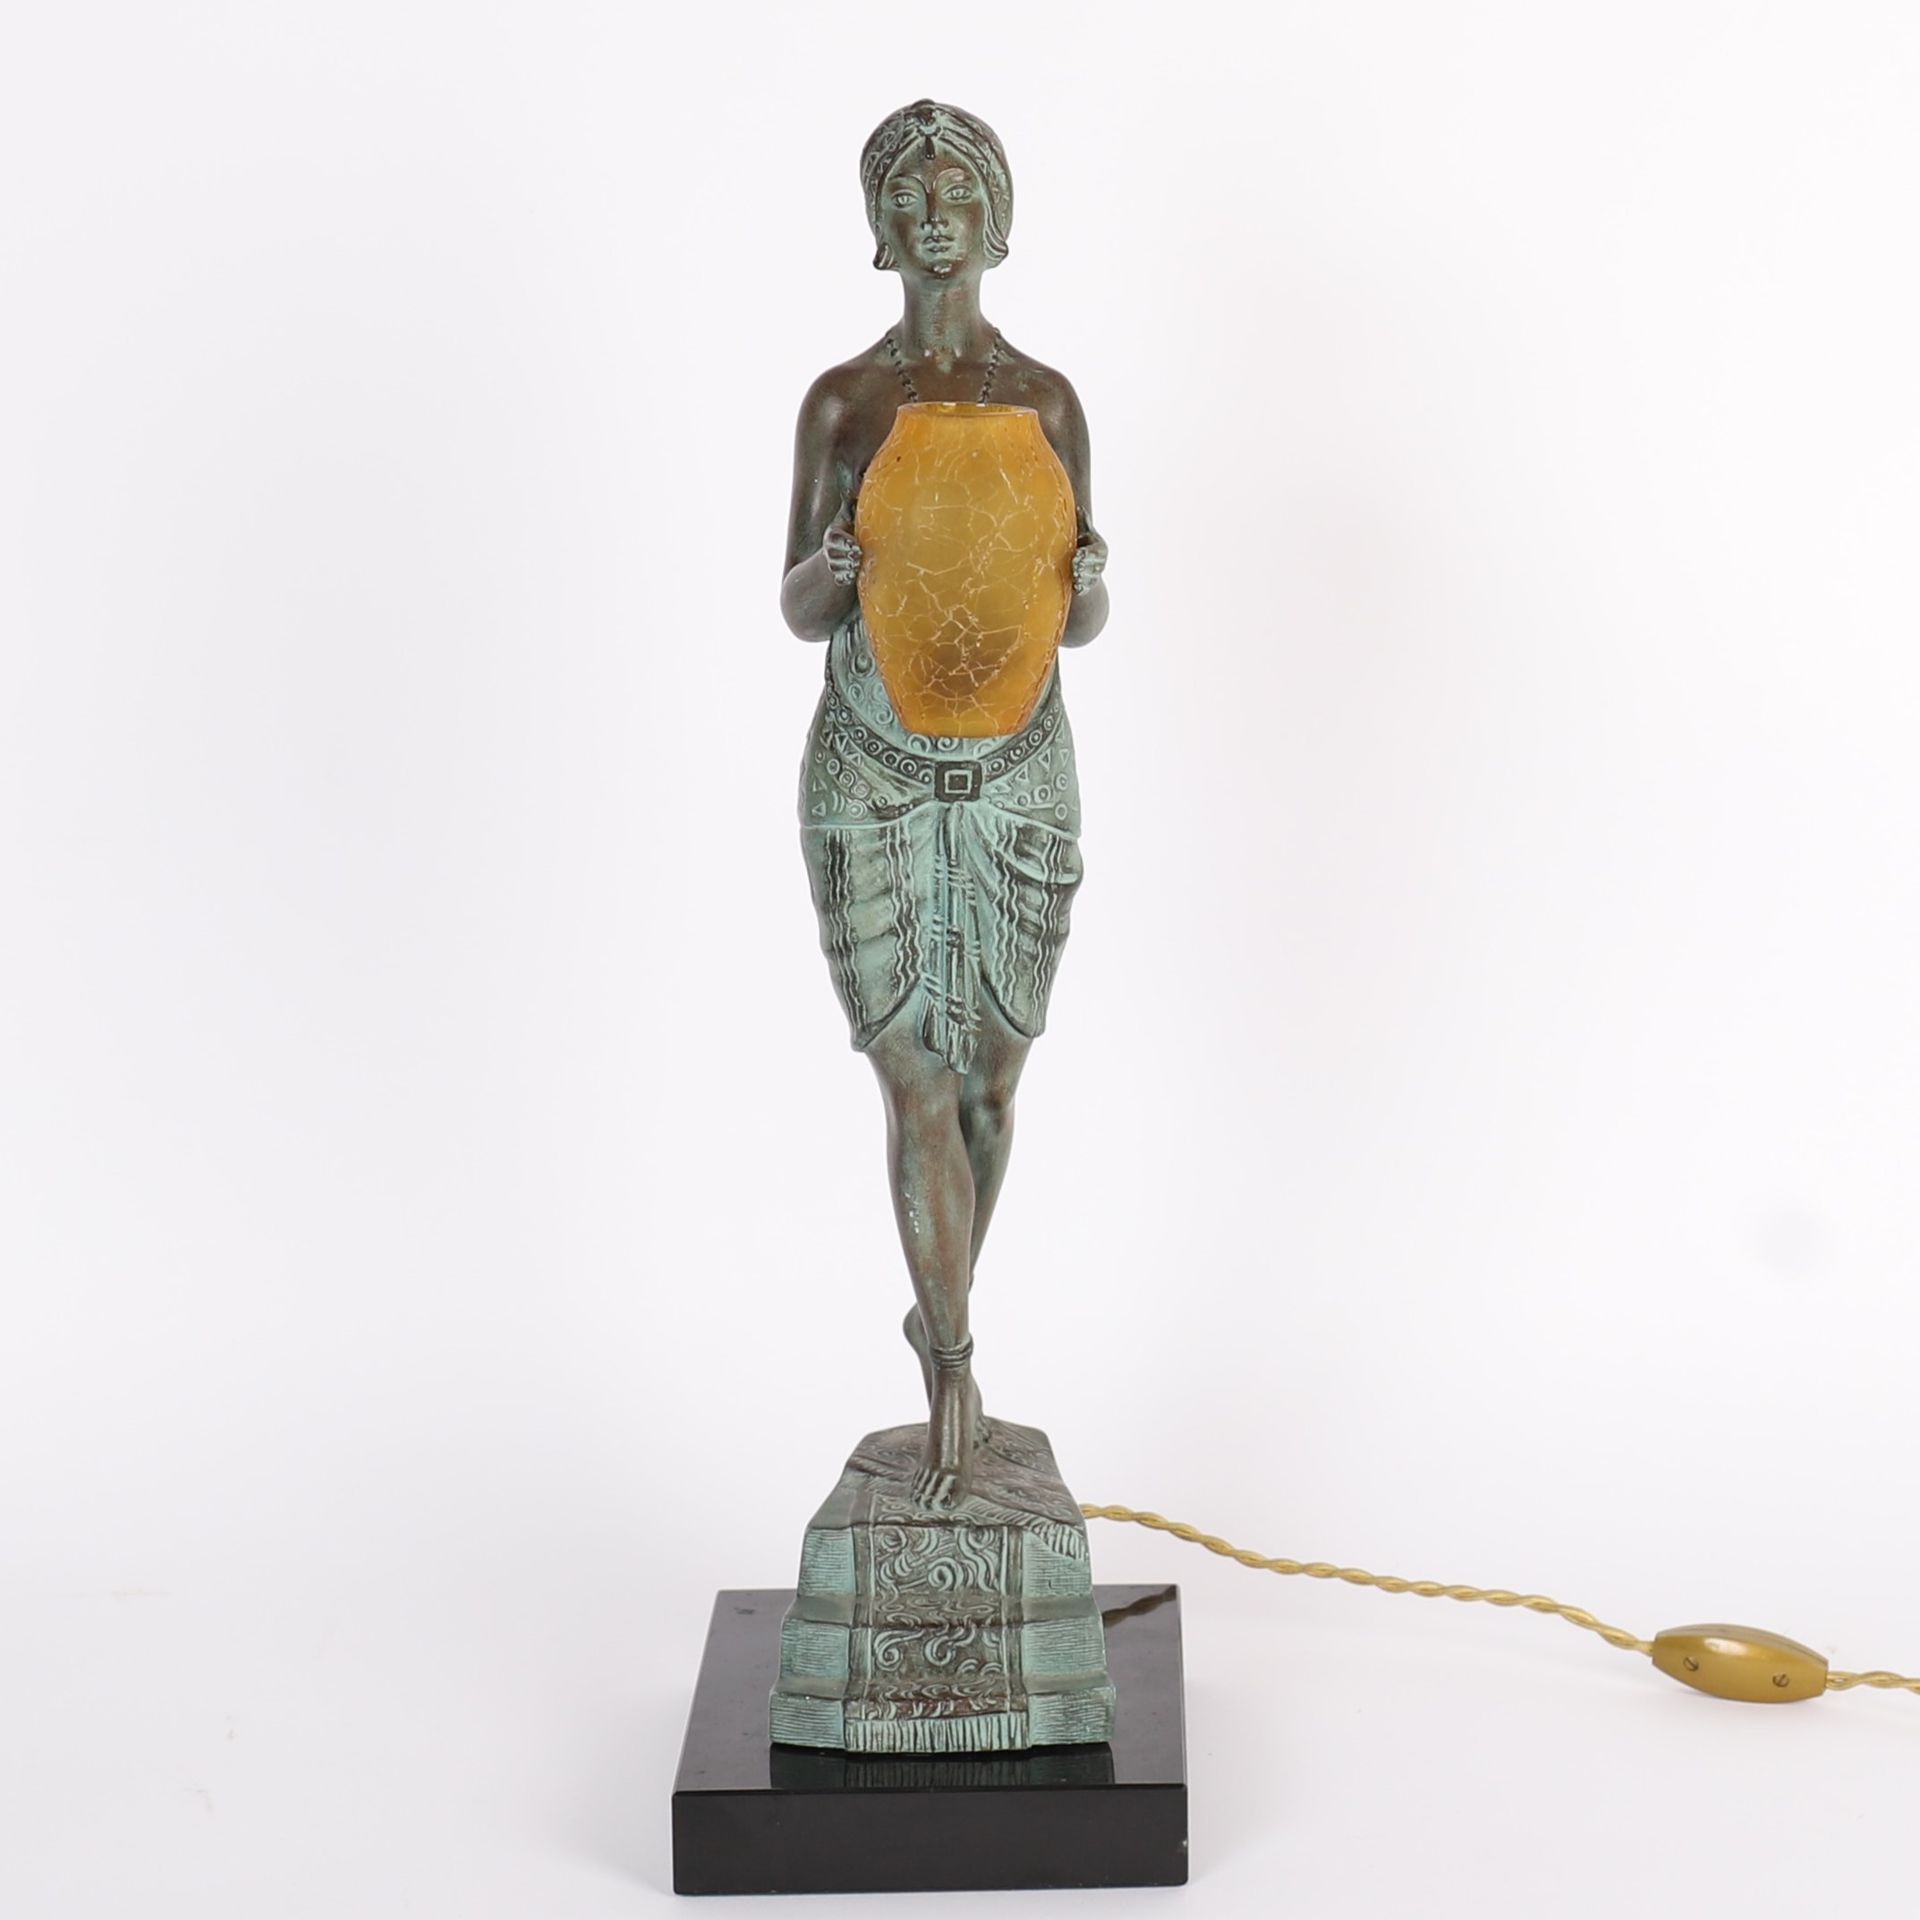 Null LE FAUAYS MAX LE VERRIER（创始人兼出版商）的 "ELEGANTE A LA ROBE "雕塑
稀有而重要的铸铁雕塑，带有绿色阴&hellip;